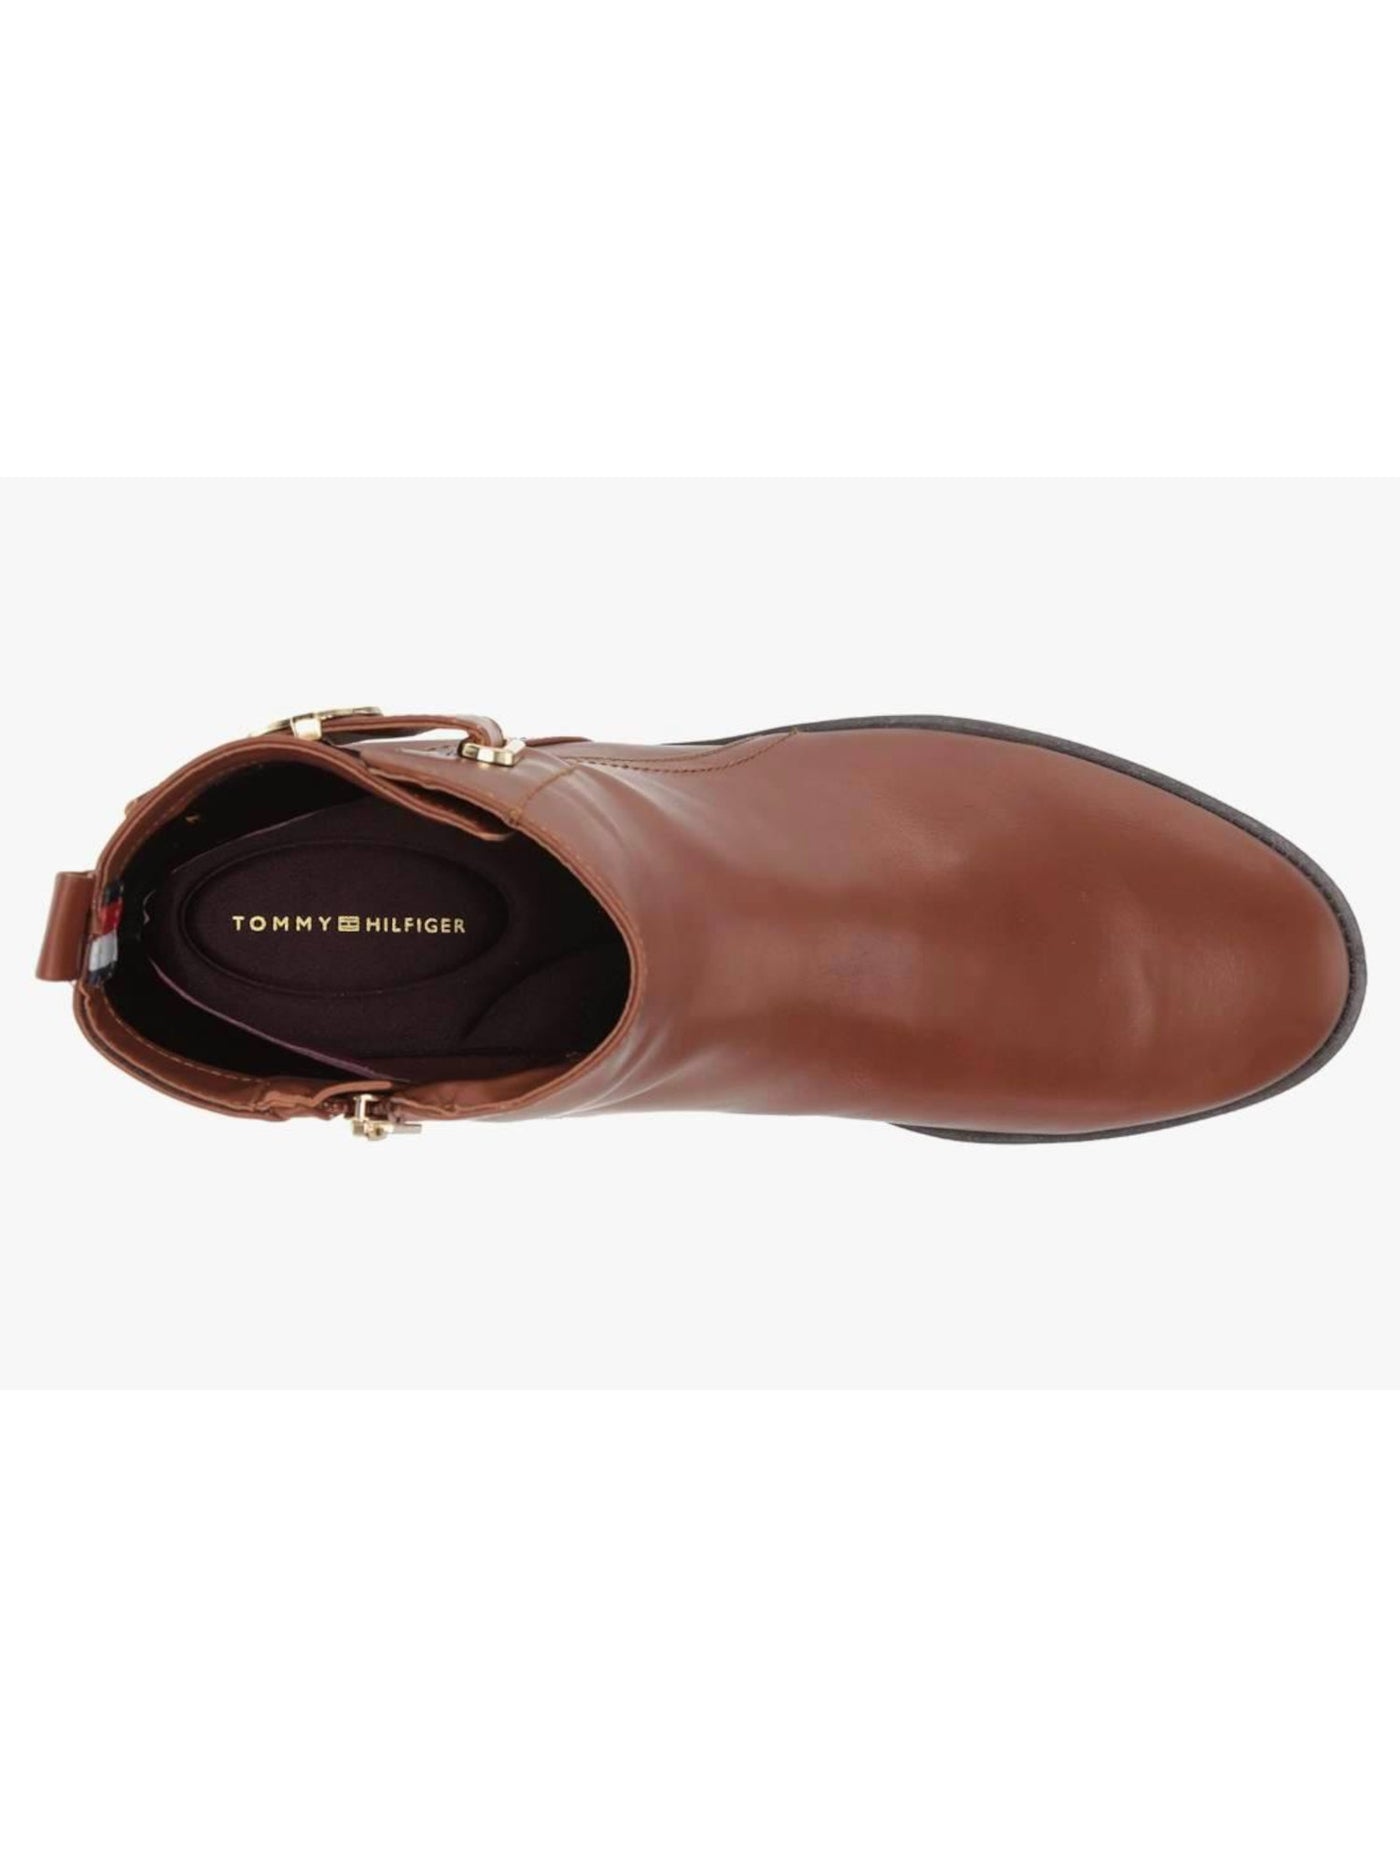 TOMMY HILFIGER Womens Brown Gold-Tone Hardware Buckle Accent Logo Comfort Rezin Round Toe Block Heel Zip-Up Booties 9.5 M